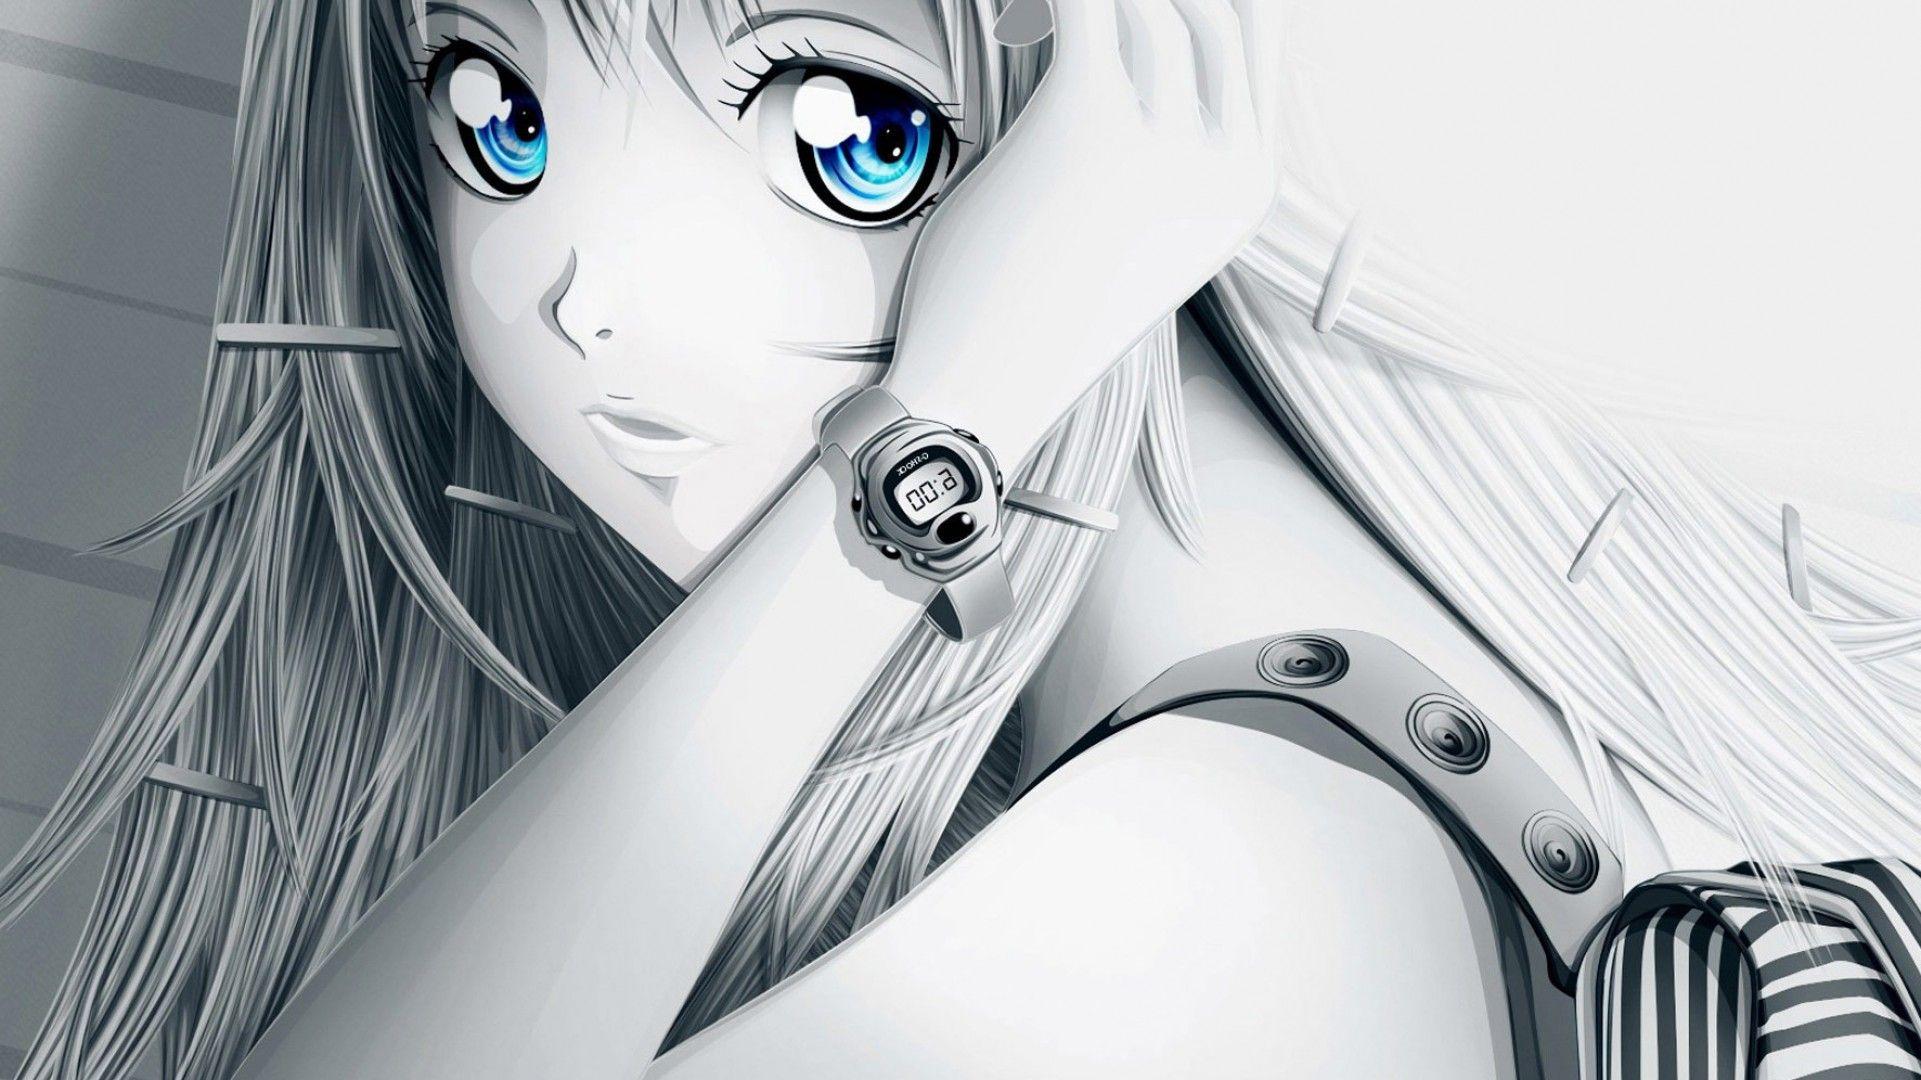 Anime Girl Wallpaper Hd Free Download gambar ke 4